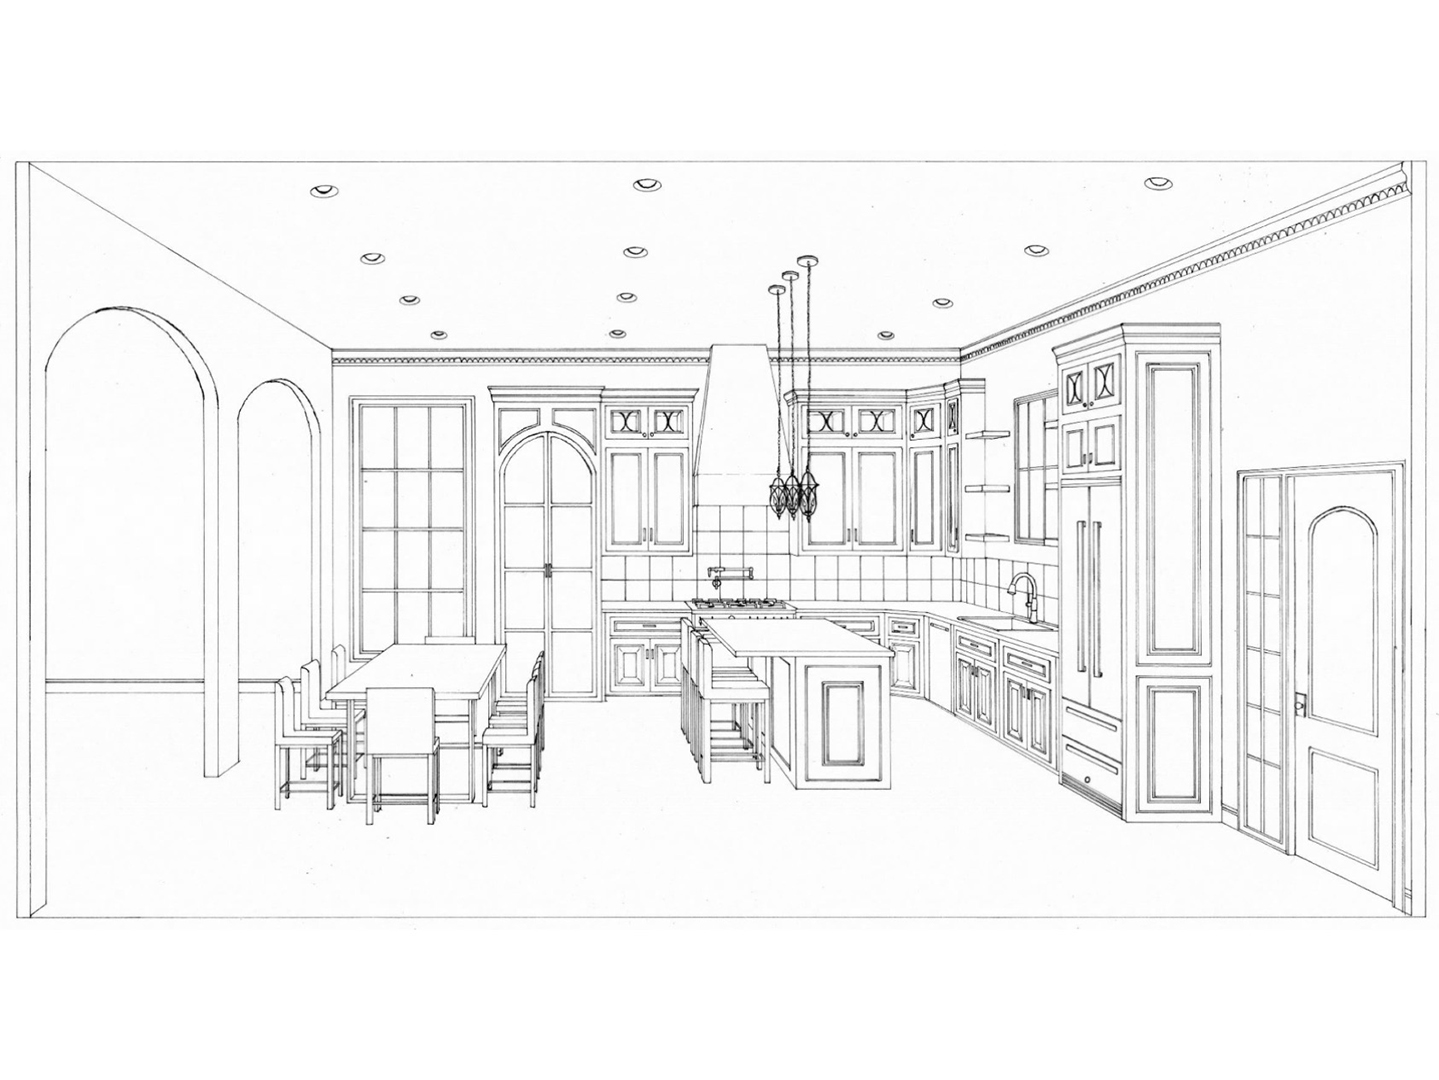 Sketch of a kitchen design